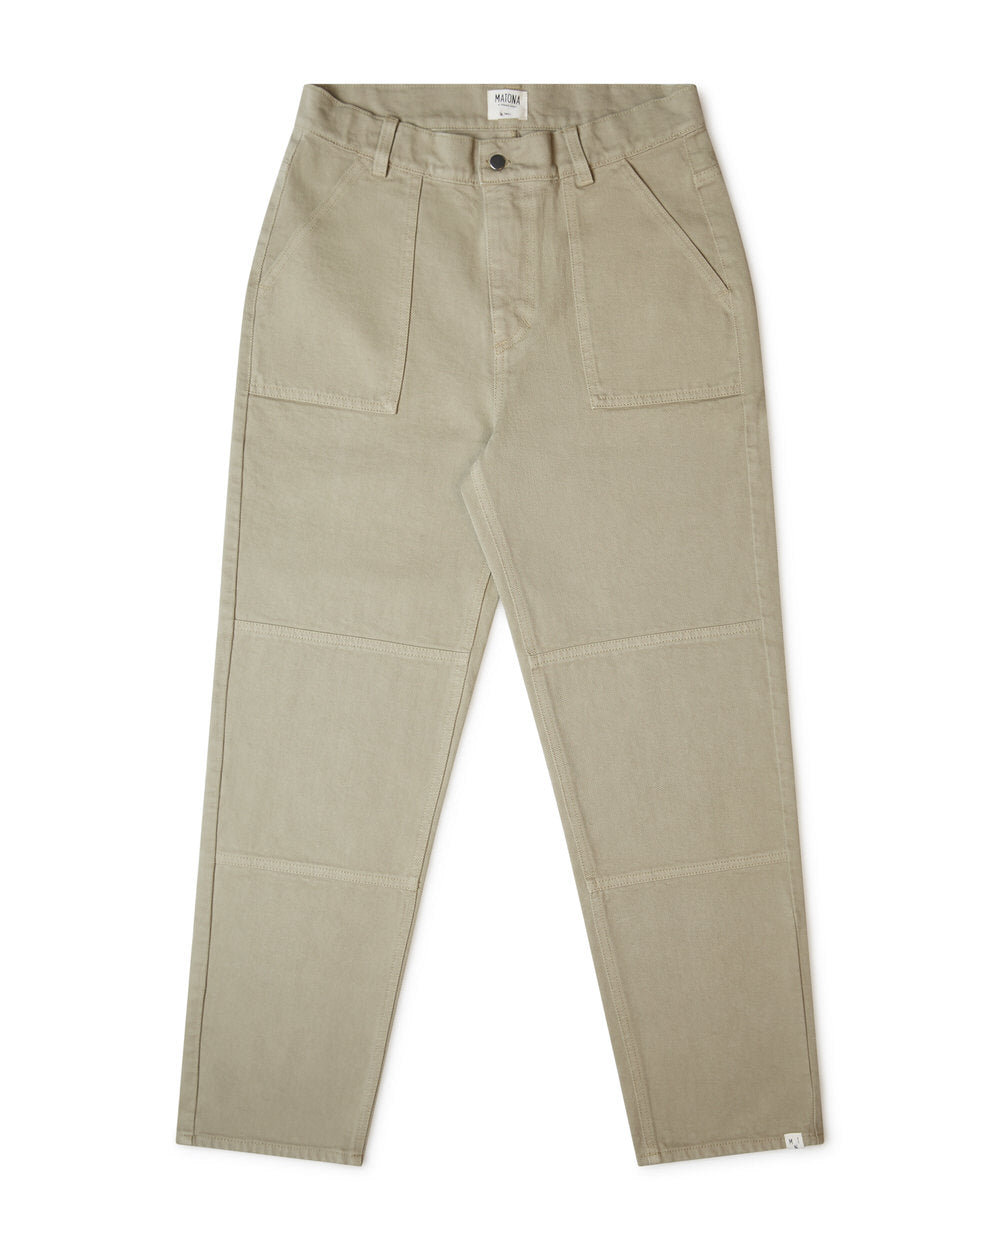 Pantalon droit beige sauge sauvage en coton biologique de Matona